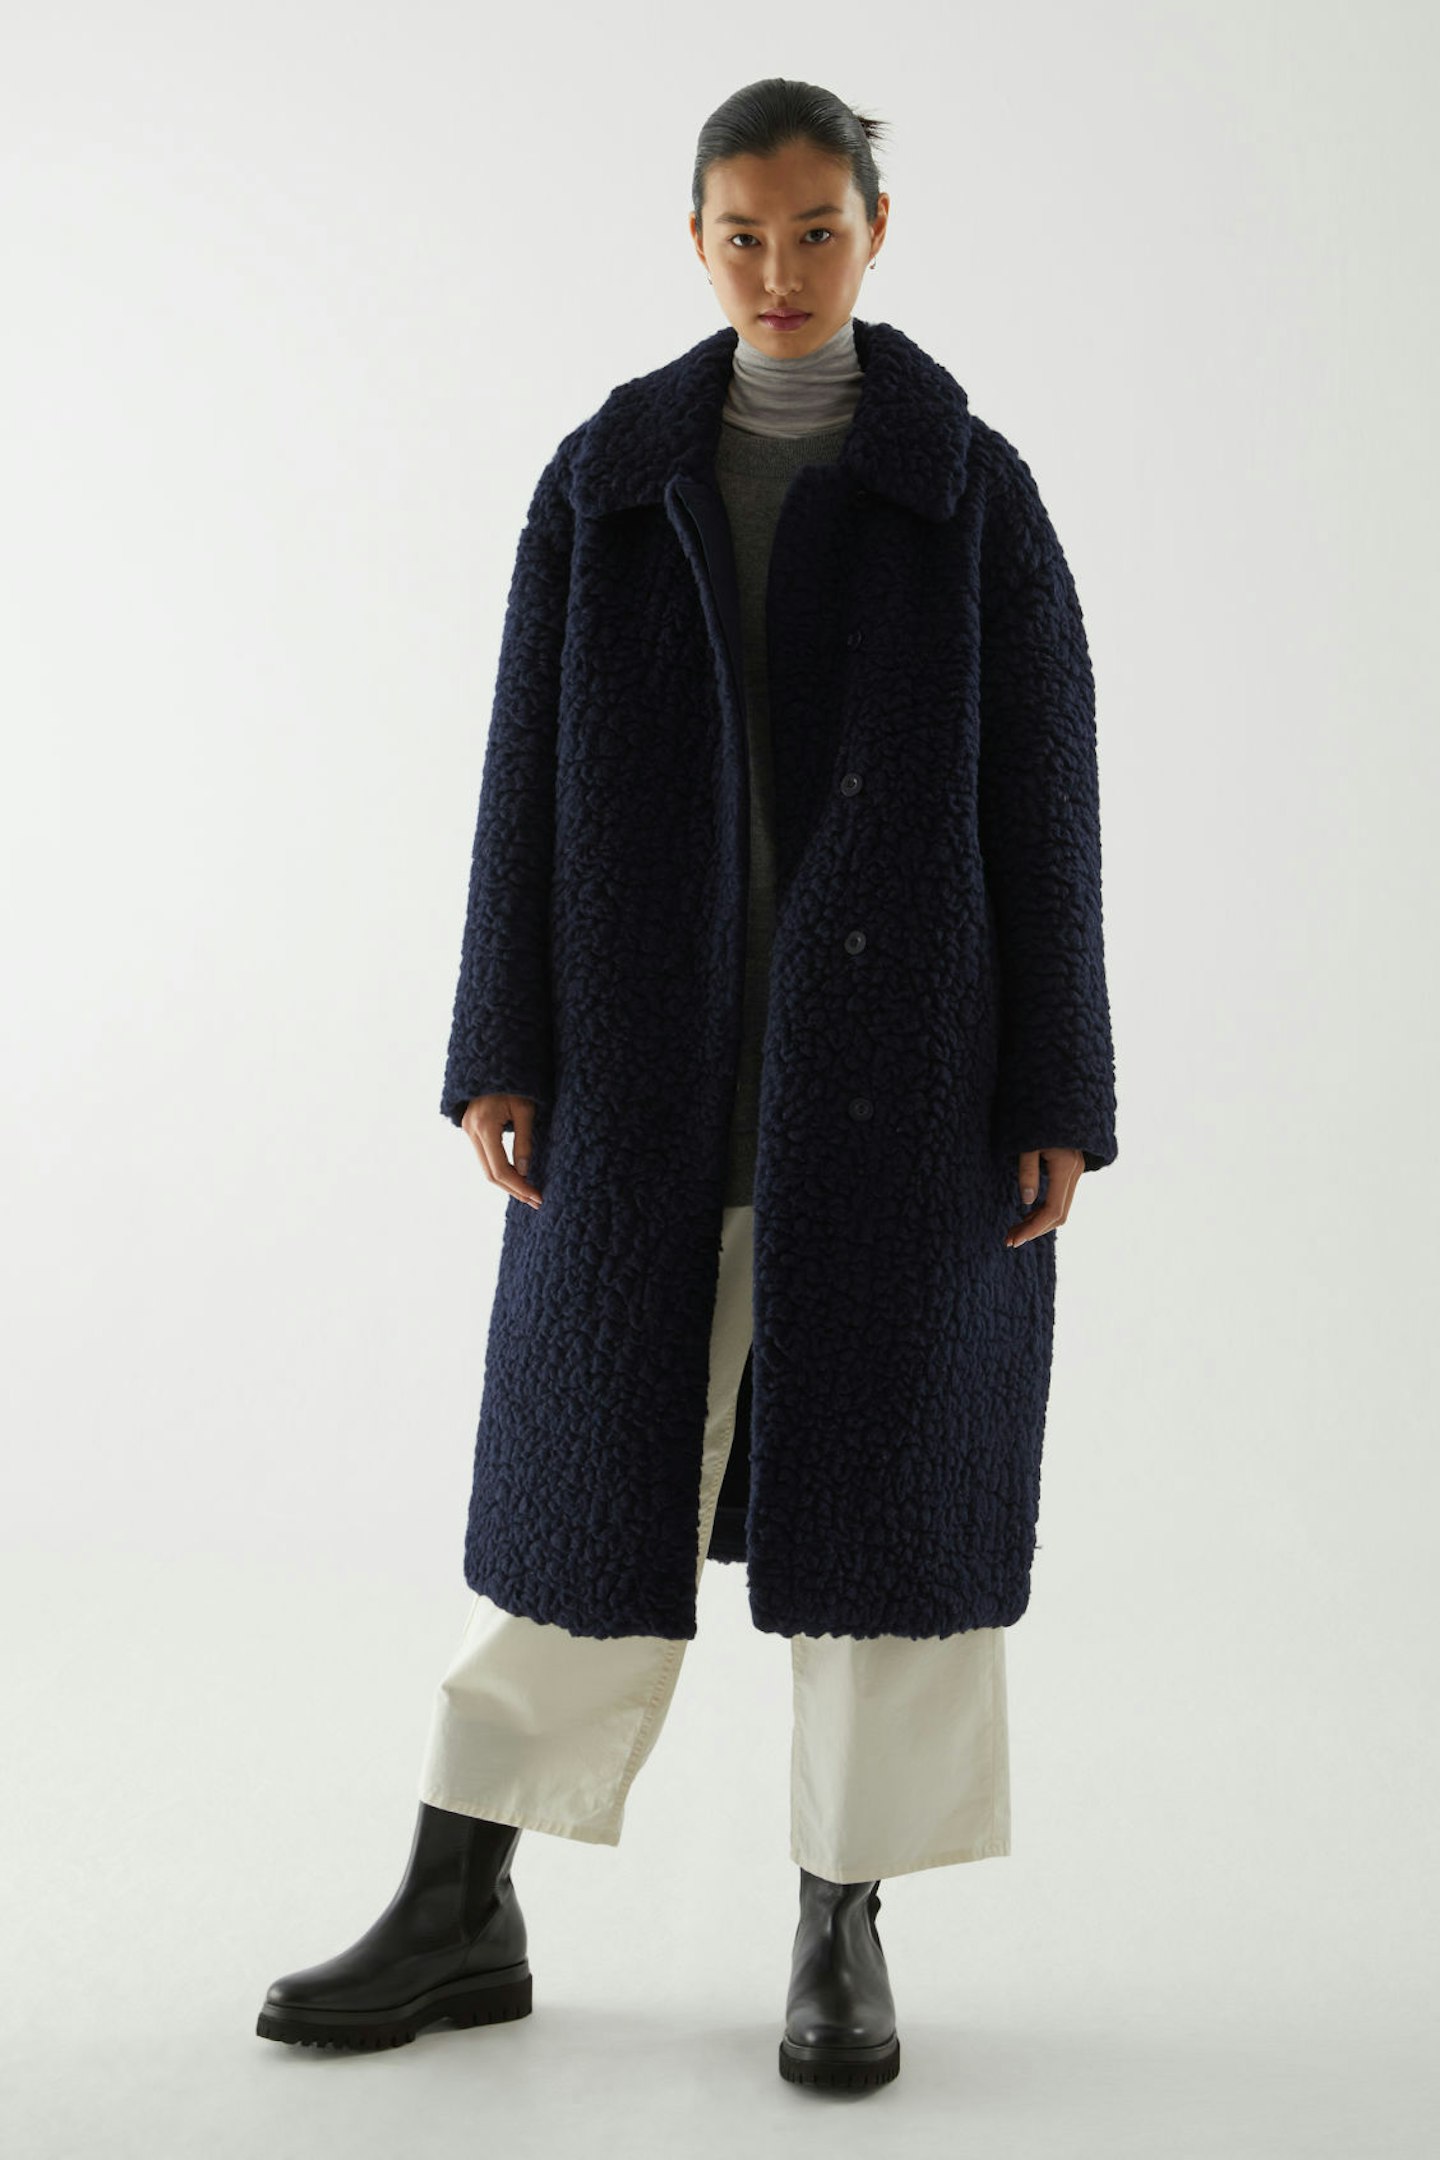 COS, Wool Fleece Teddy Coat, £225